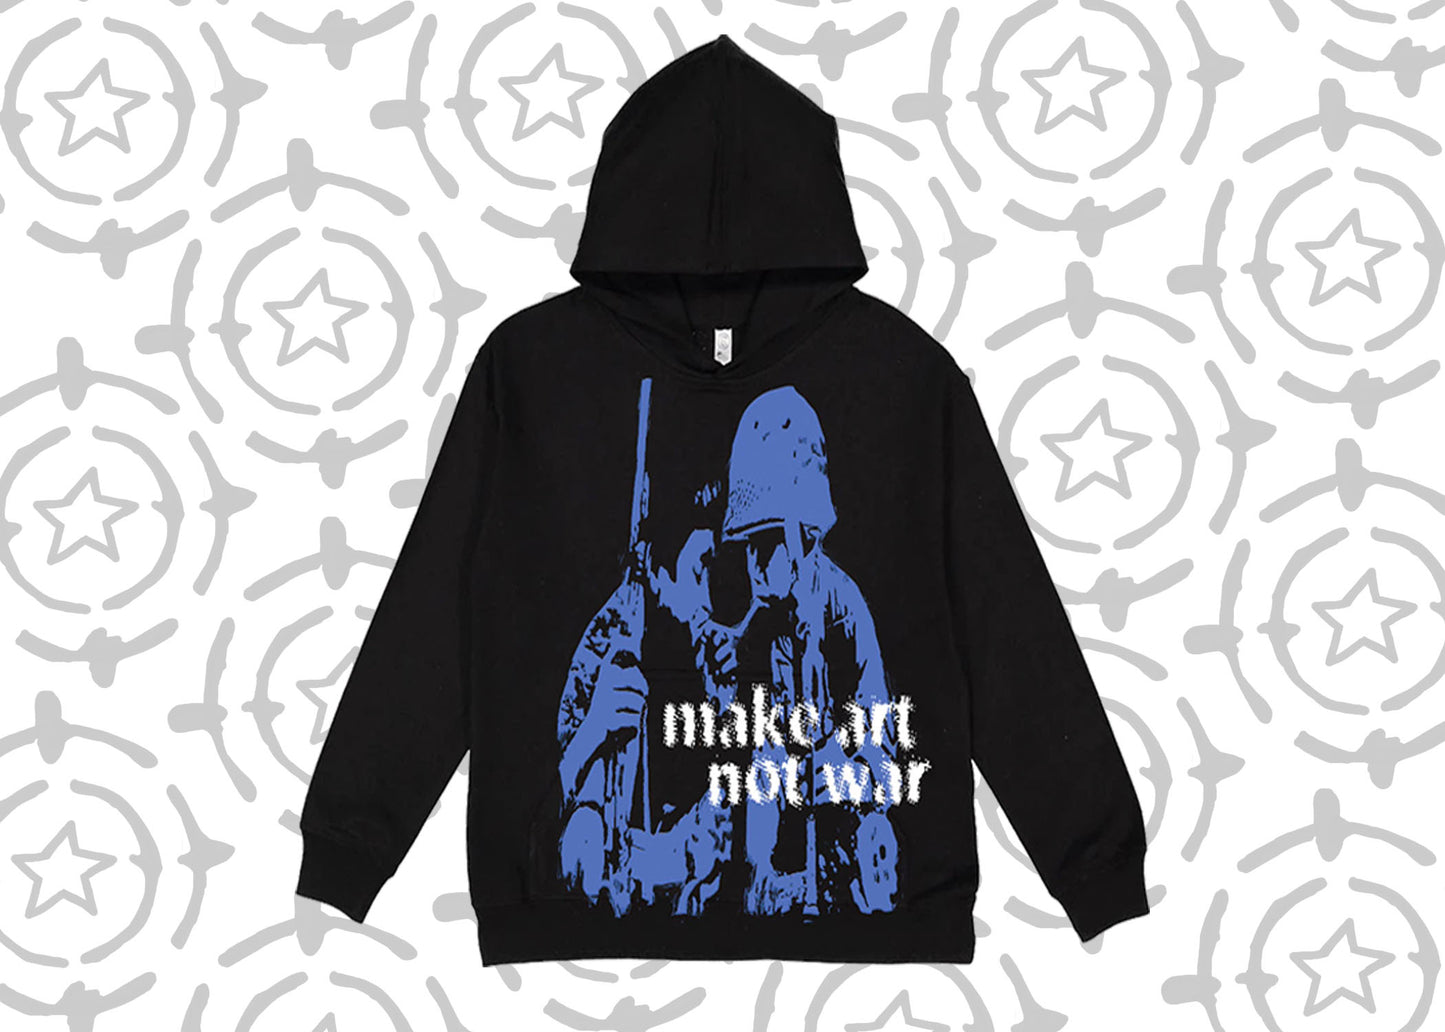 “Make Art Not War” Hoodie